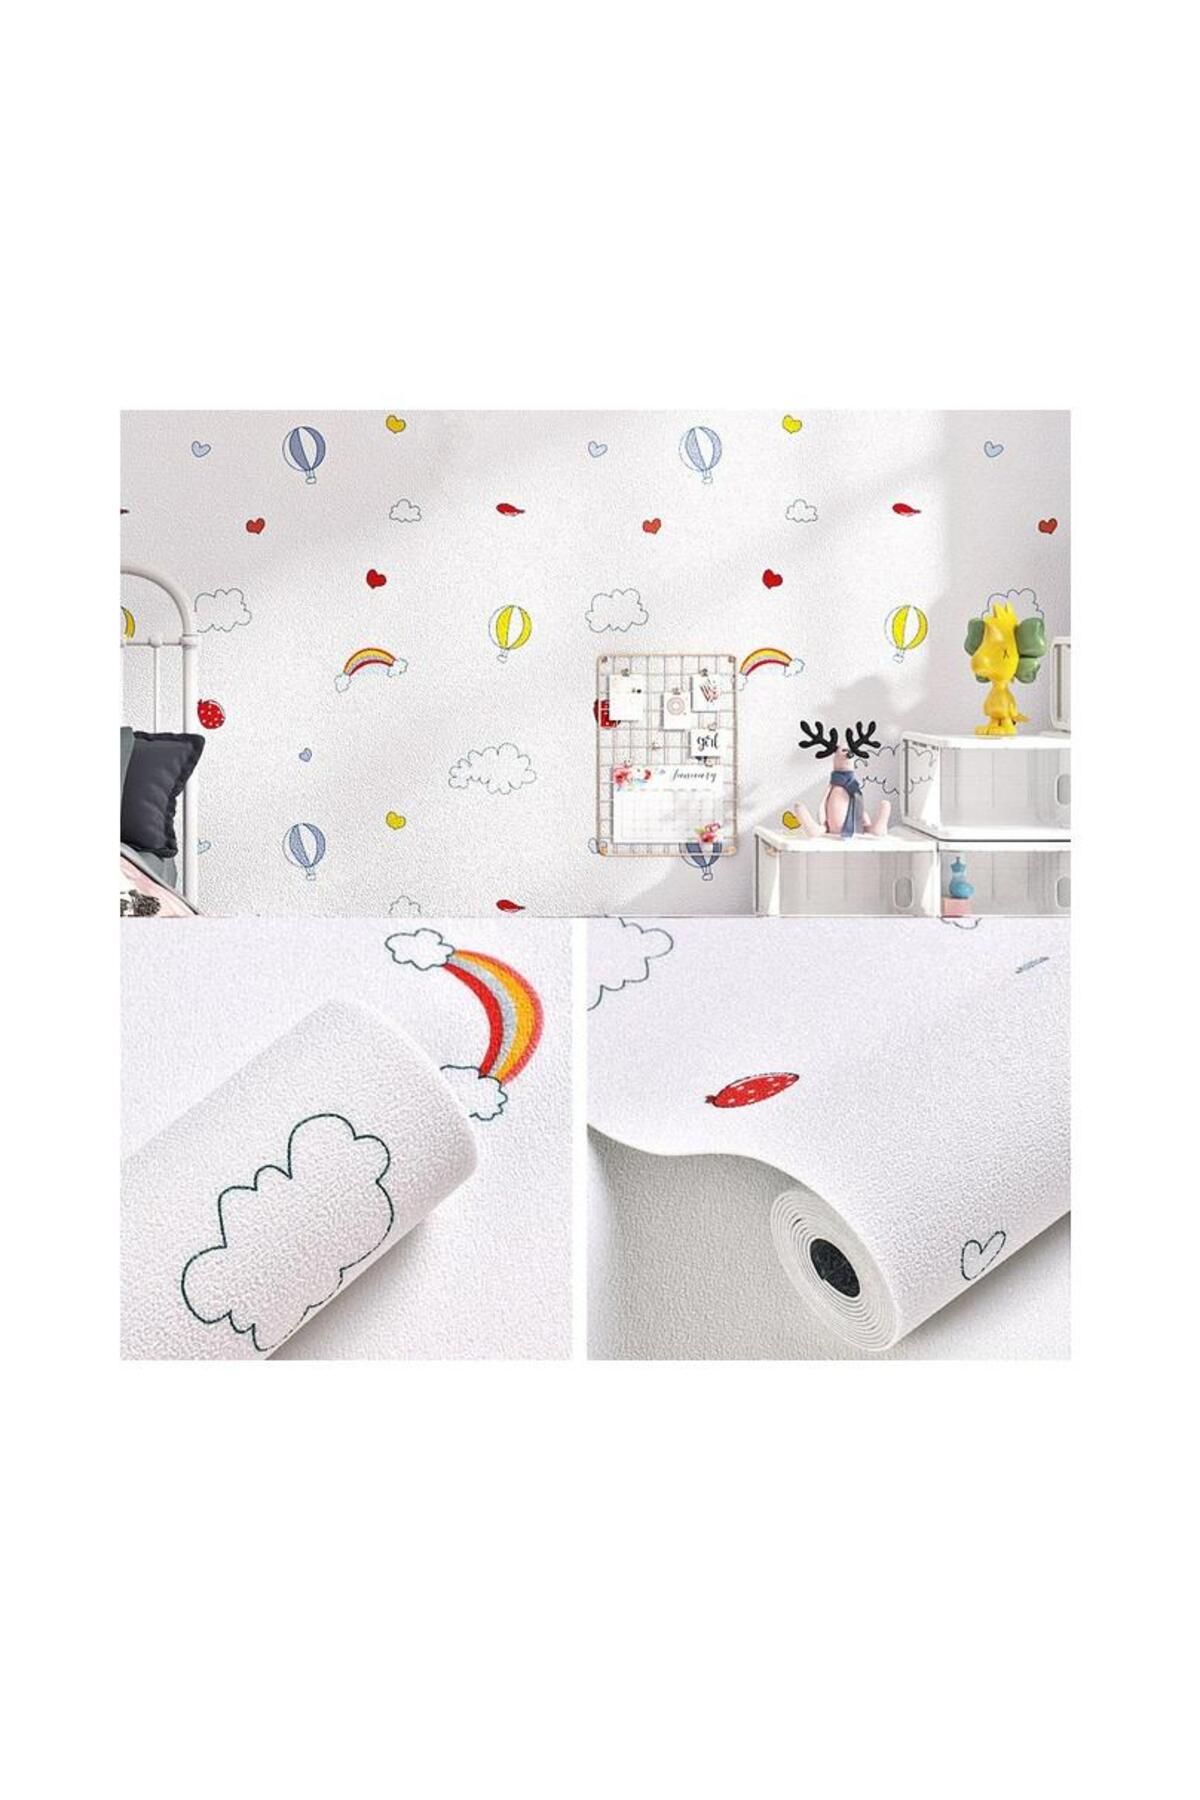 Renkli Duvarlar 50x280cm Çıkart Yapıştır Sticker Gökkuşağı Balon Yapışkanlı Duvar Kağıdı Silinebilir Çocuk Odası